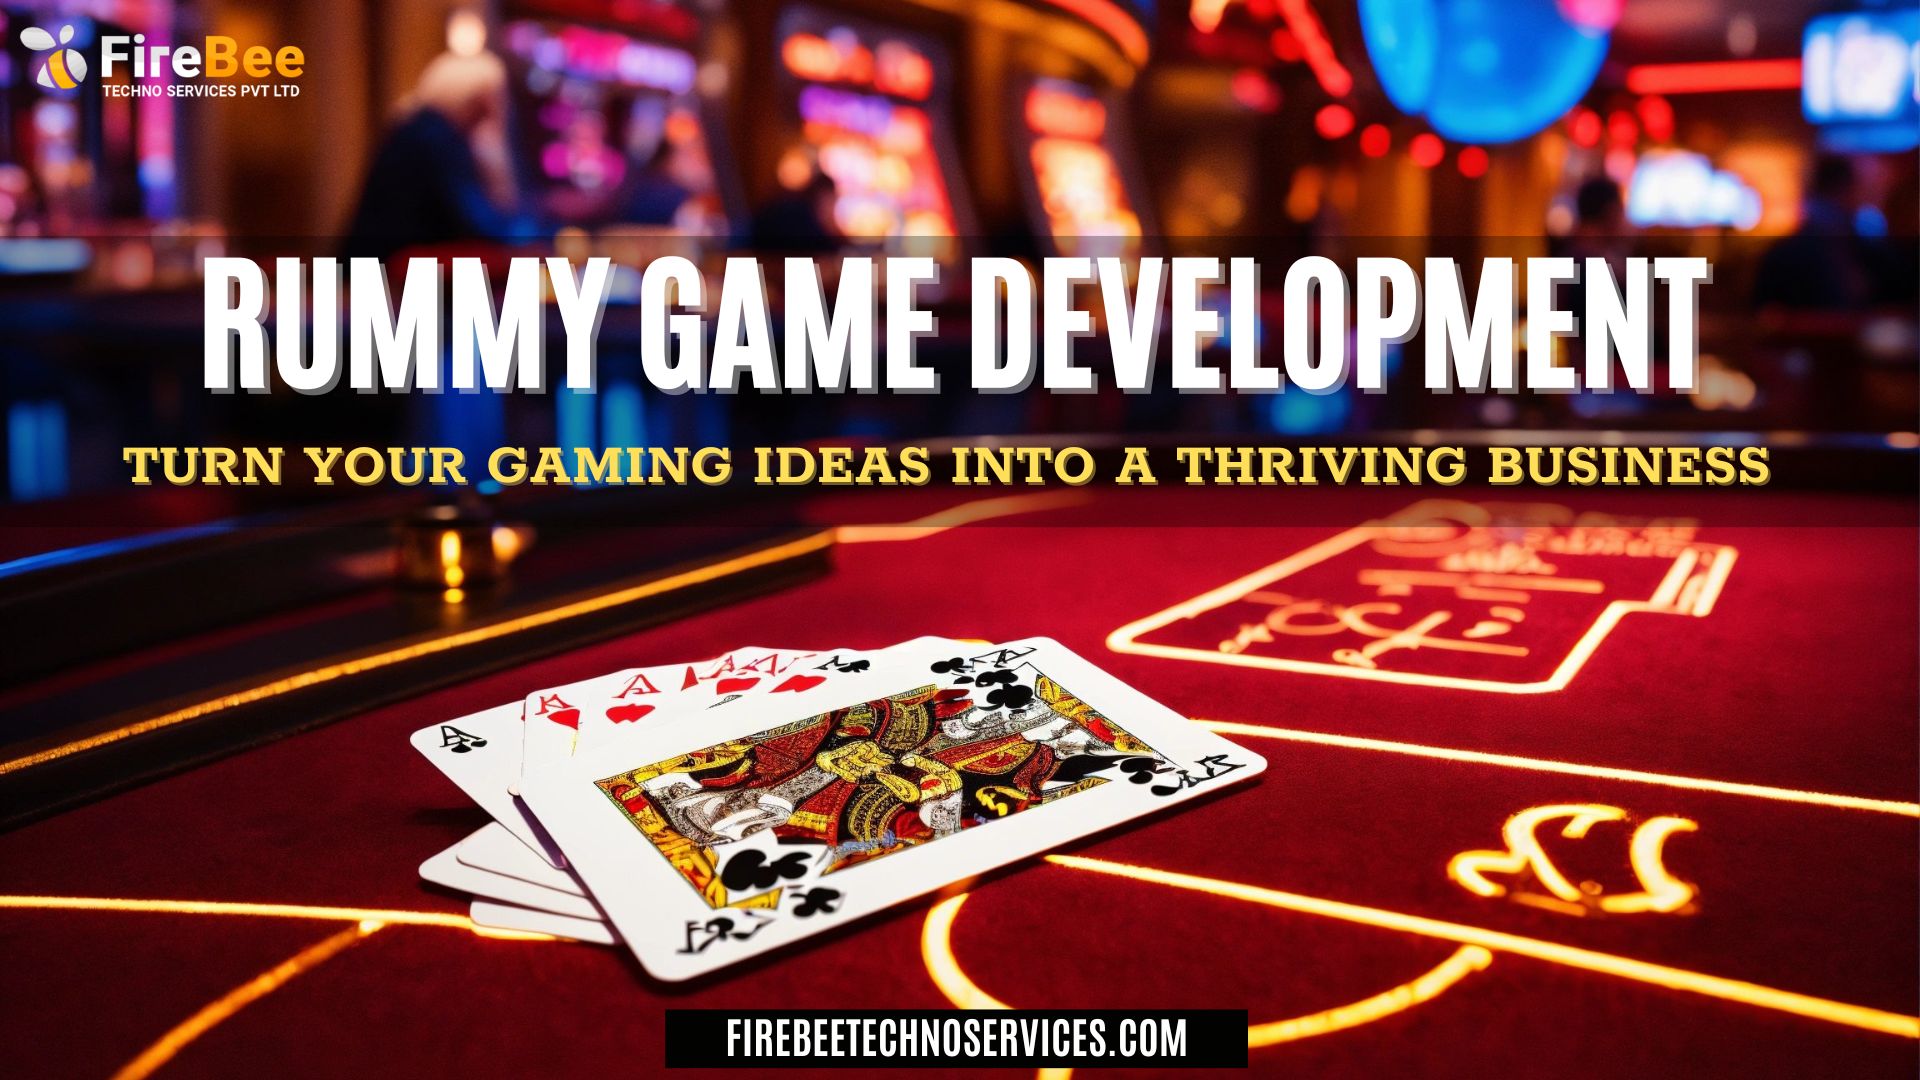 Rummy Game Development Company | Firebee Techno Services